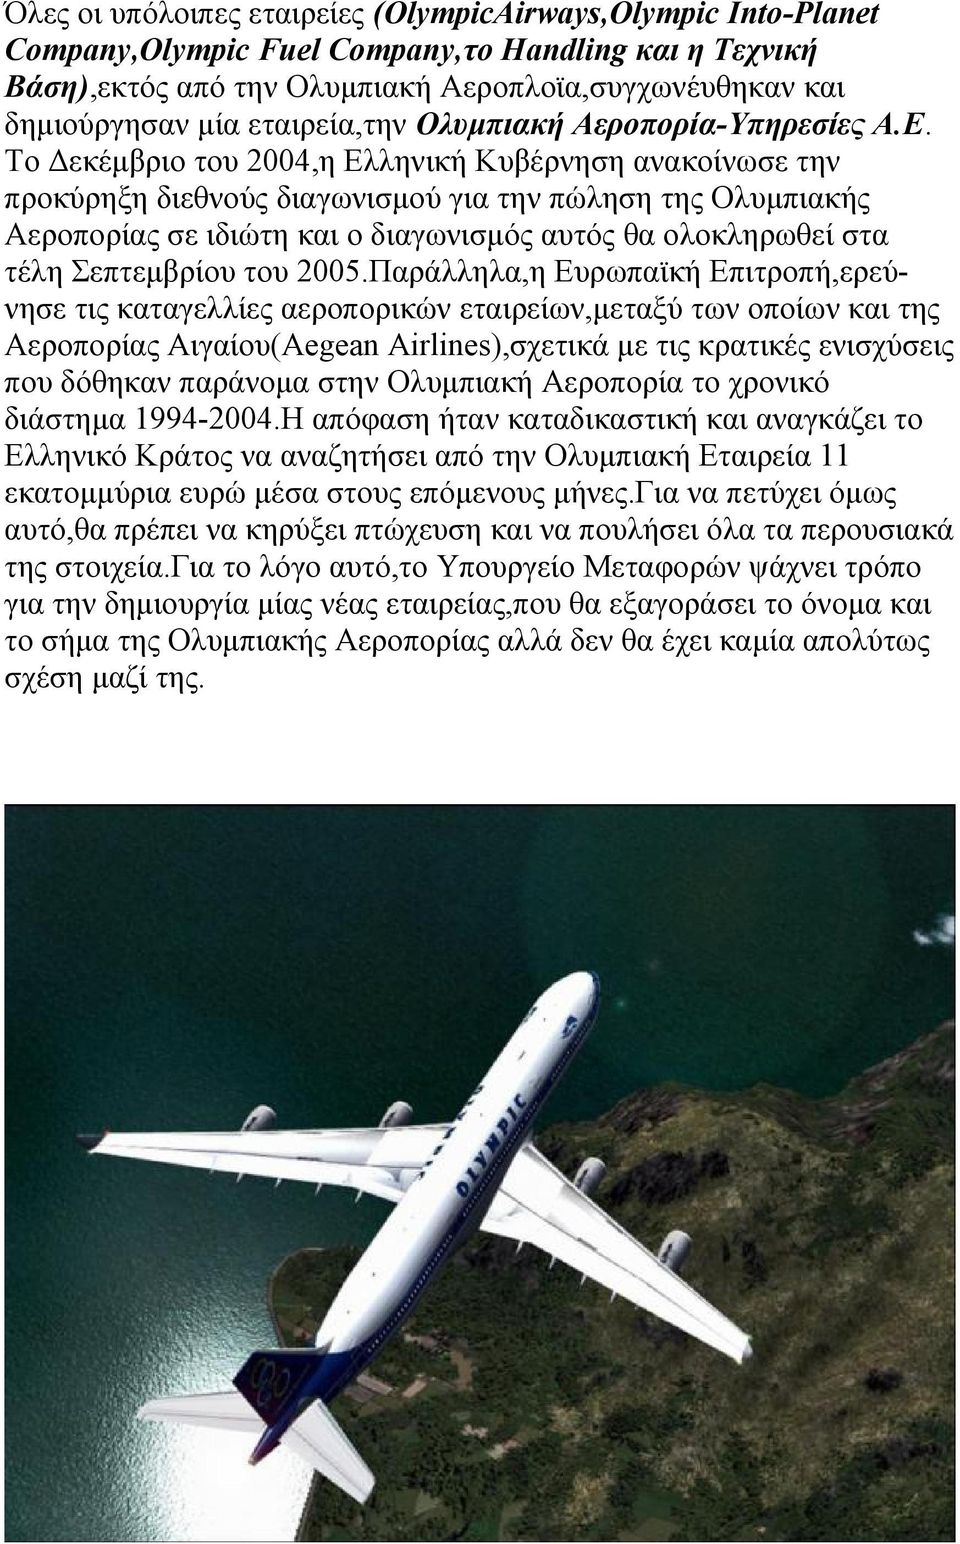 Το Δεκέμβριο του 2004,η Ελληνική Κυβέρνηση ανακοίνωσε την προκύρηξη διεθνούς διαγωνισμού για την πώληση της Ολυμπιακής Αεροπορίας σε ιδιώτη και ο διαγωνισμός αυτός θα ολοκληρωθεί στα τέλη Σεπτεμβρίου